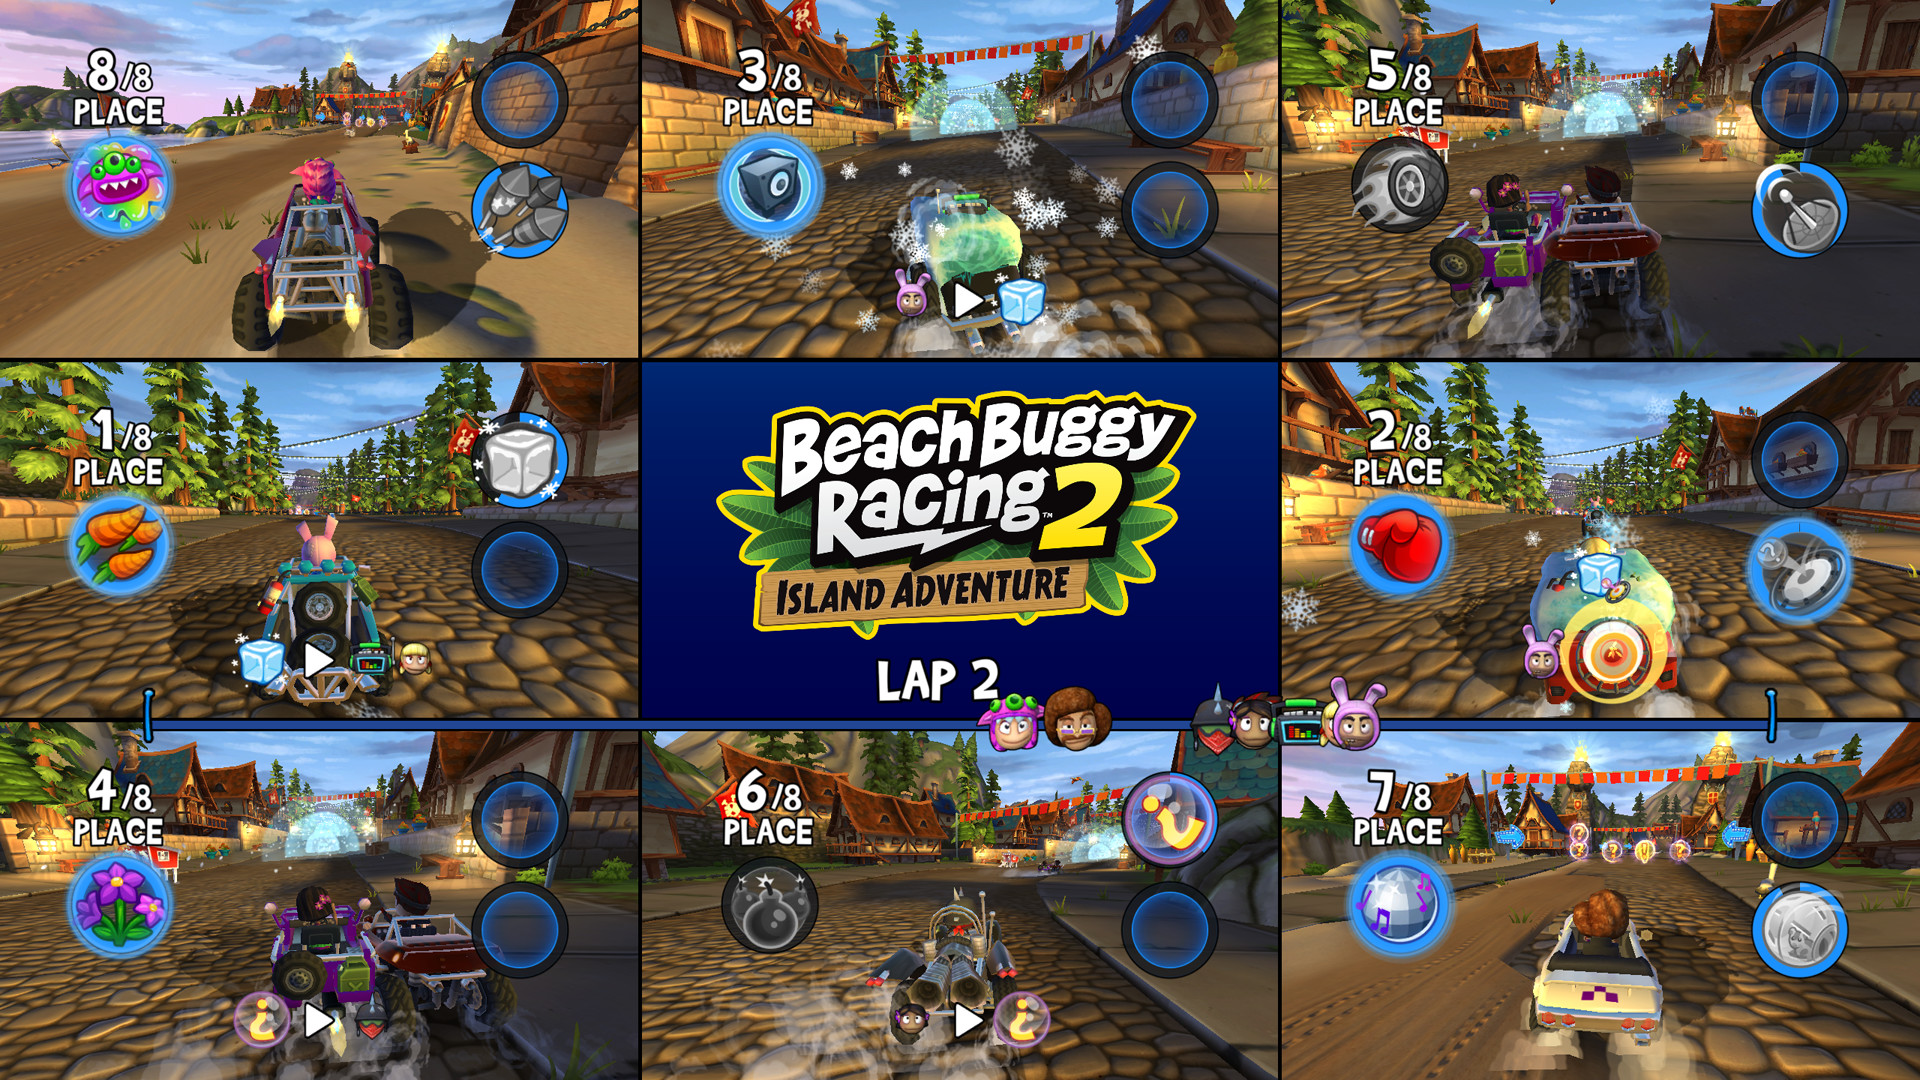 Beach Buggy Racing 2 / gameplay PC #allmundo #games #videos